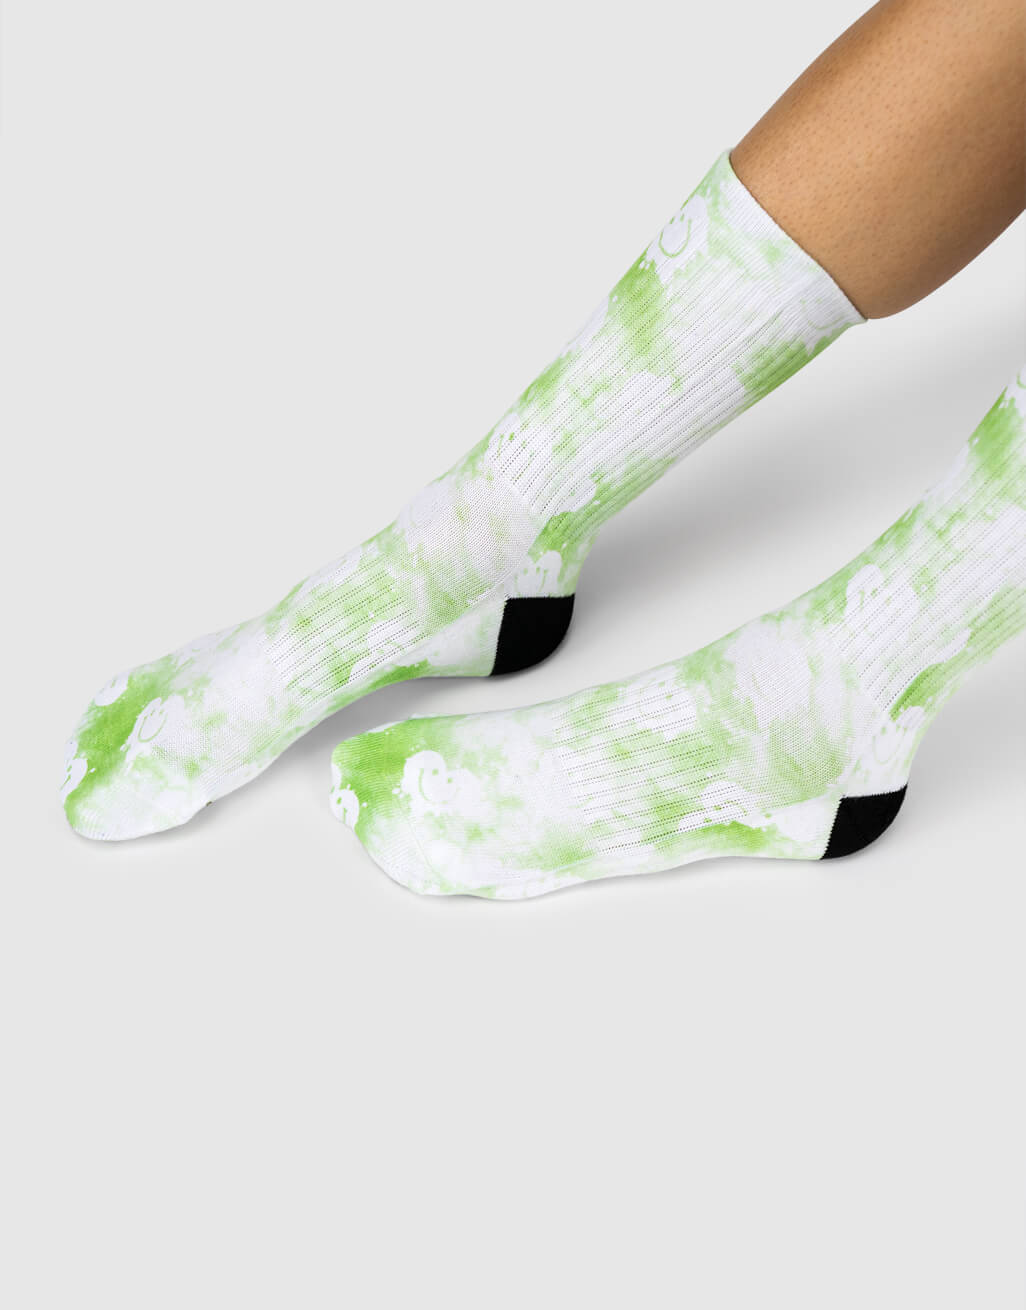 Green Smiley Tie Dye Socks